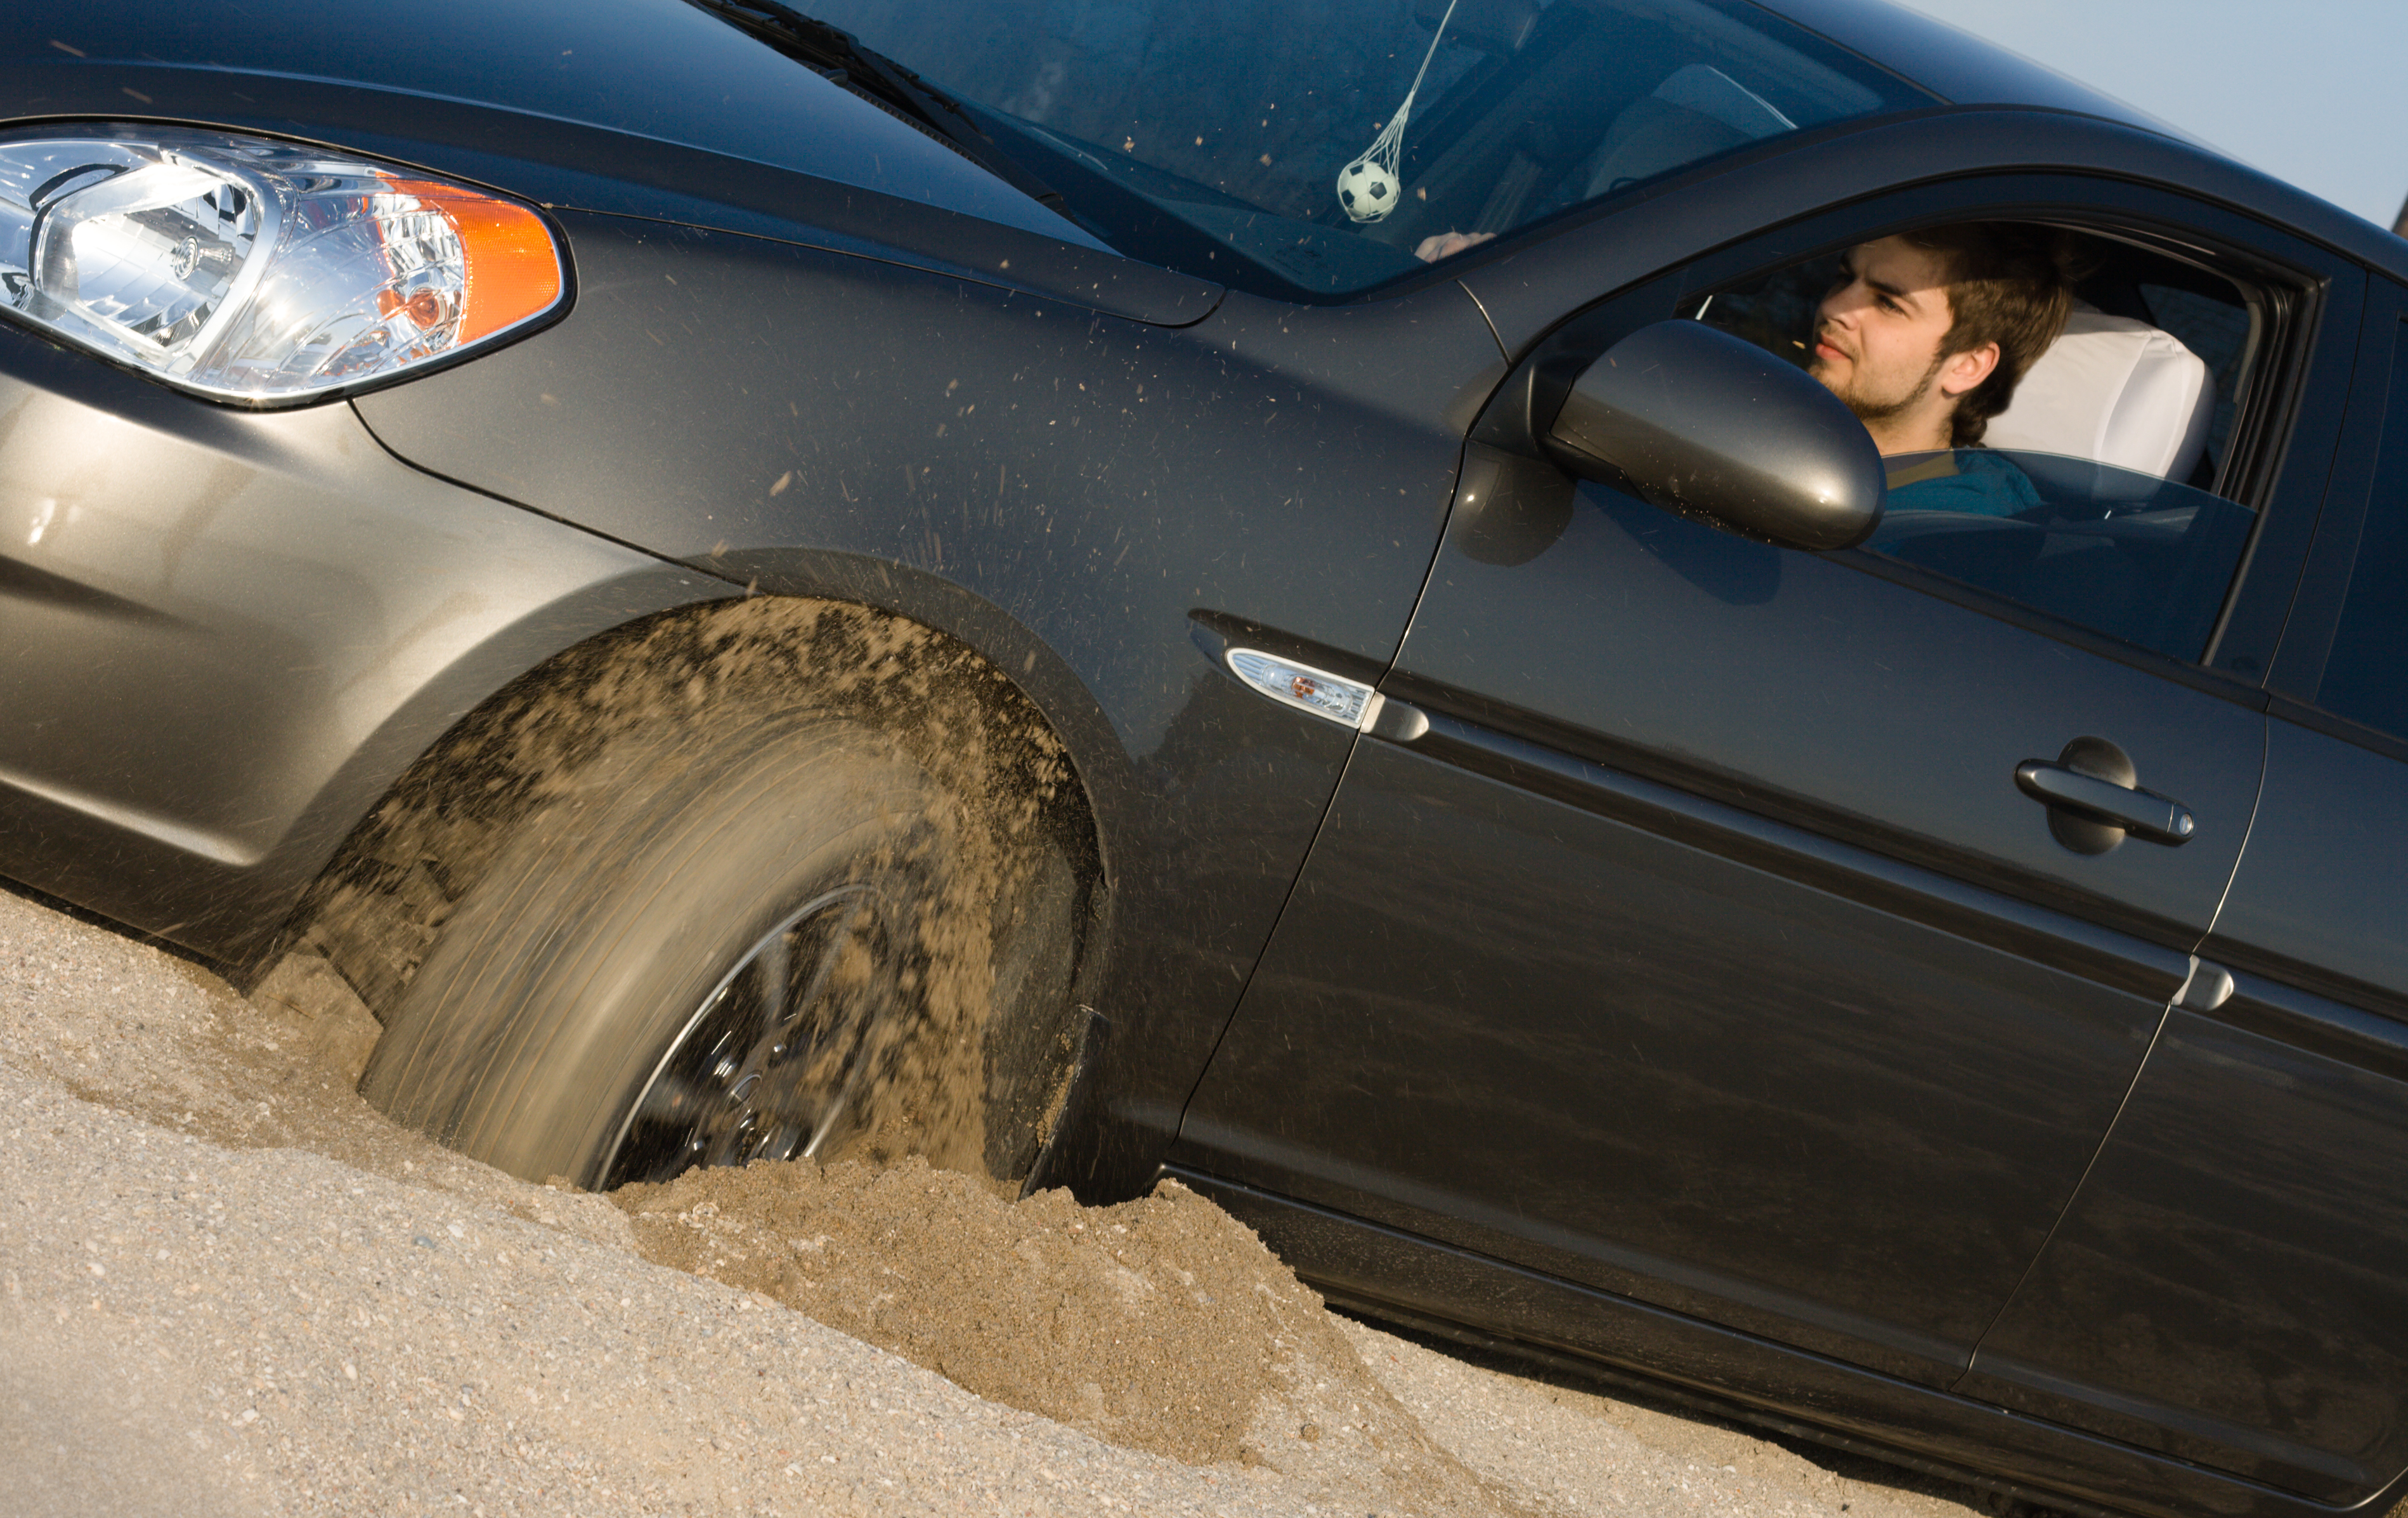 Застревают крошки. Машина буксует. Машина застряла в песке. Машина с песком. Автомобиль забуксовал.